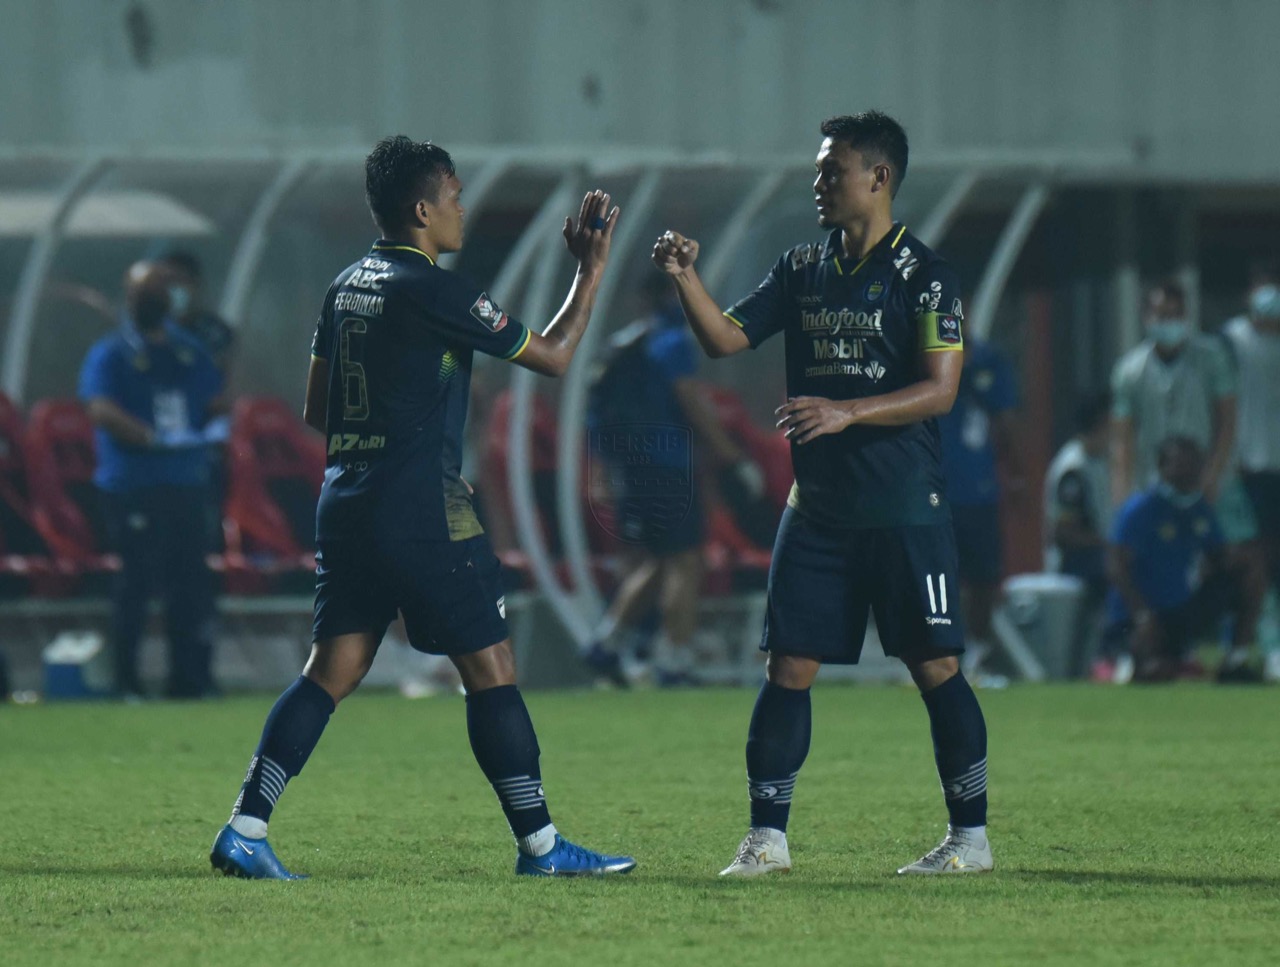 Firasat Gelandang Persib Bandung soal Gol Ferdinand Sinaga Terbukti Benar